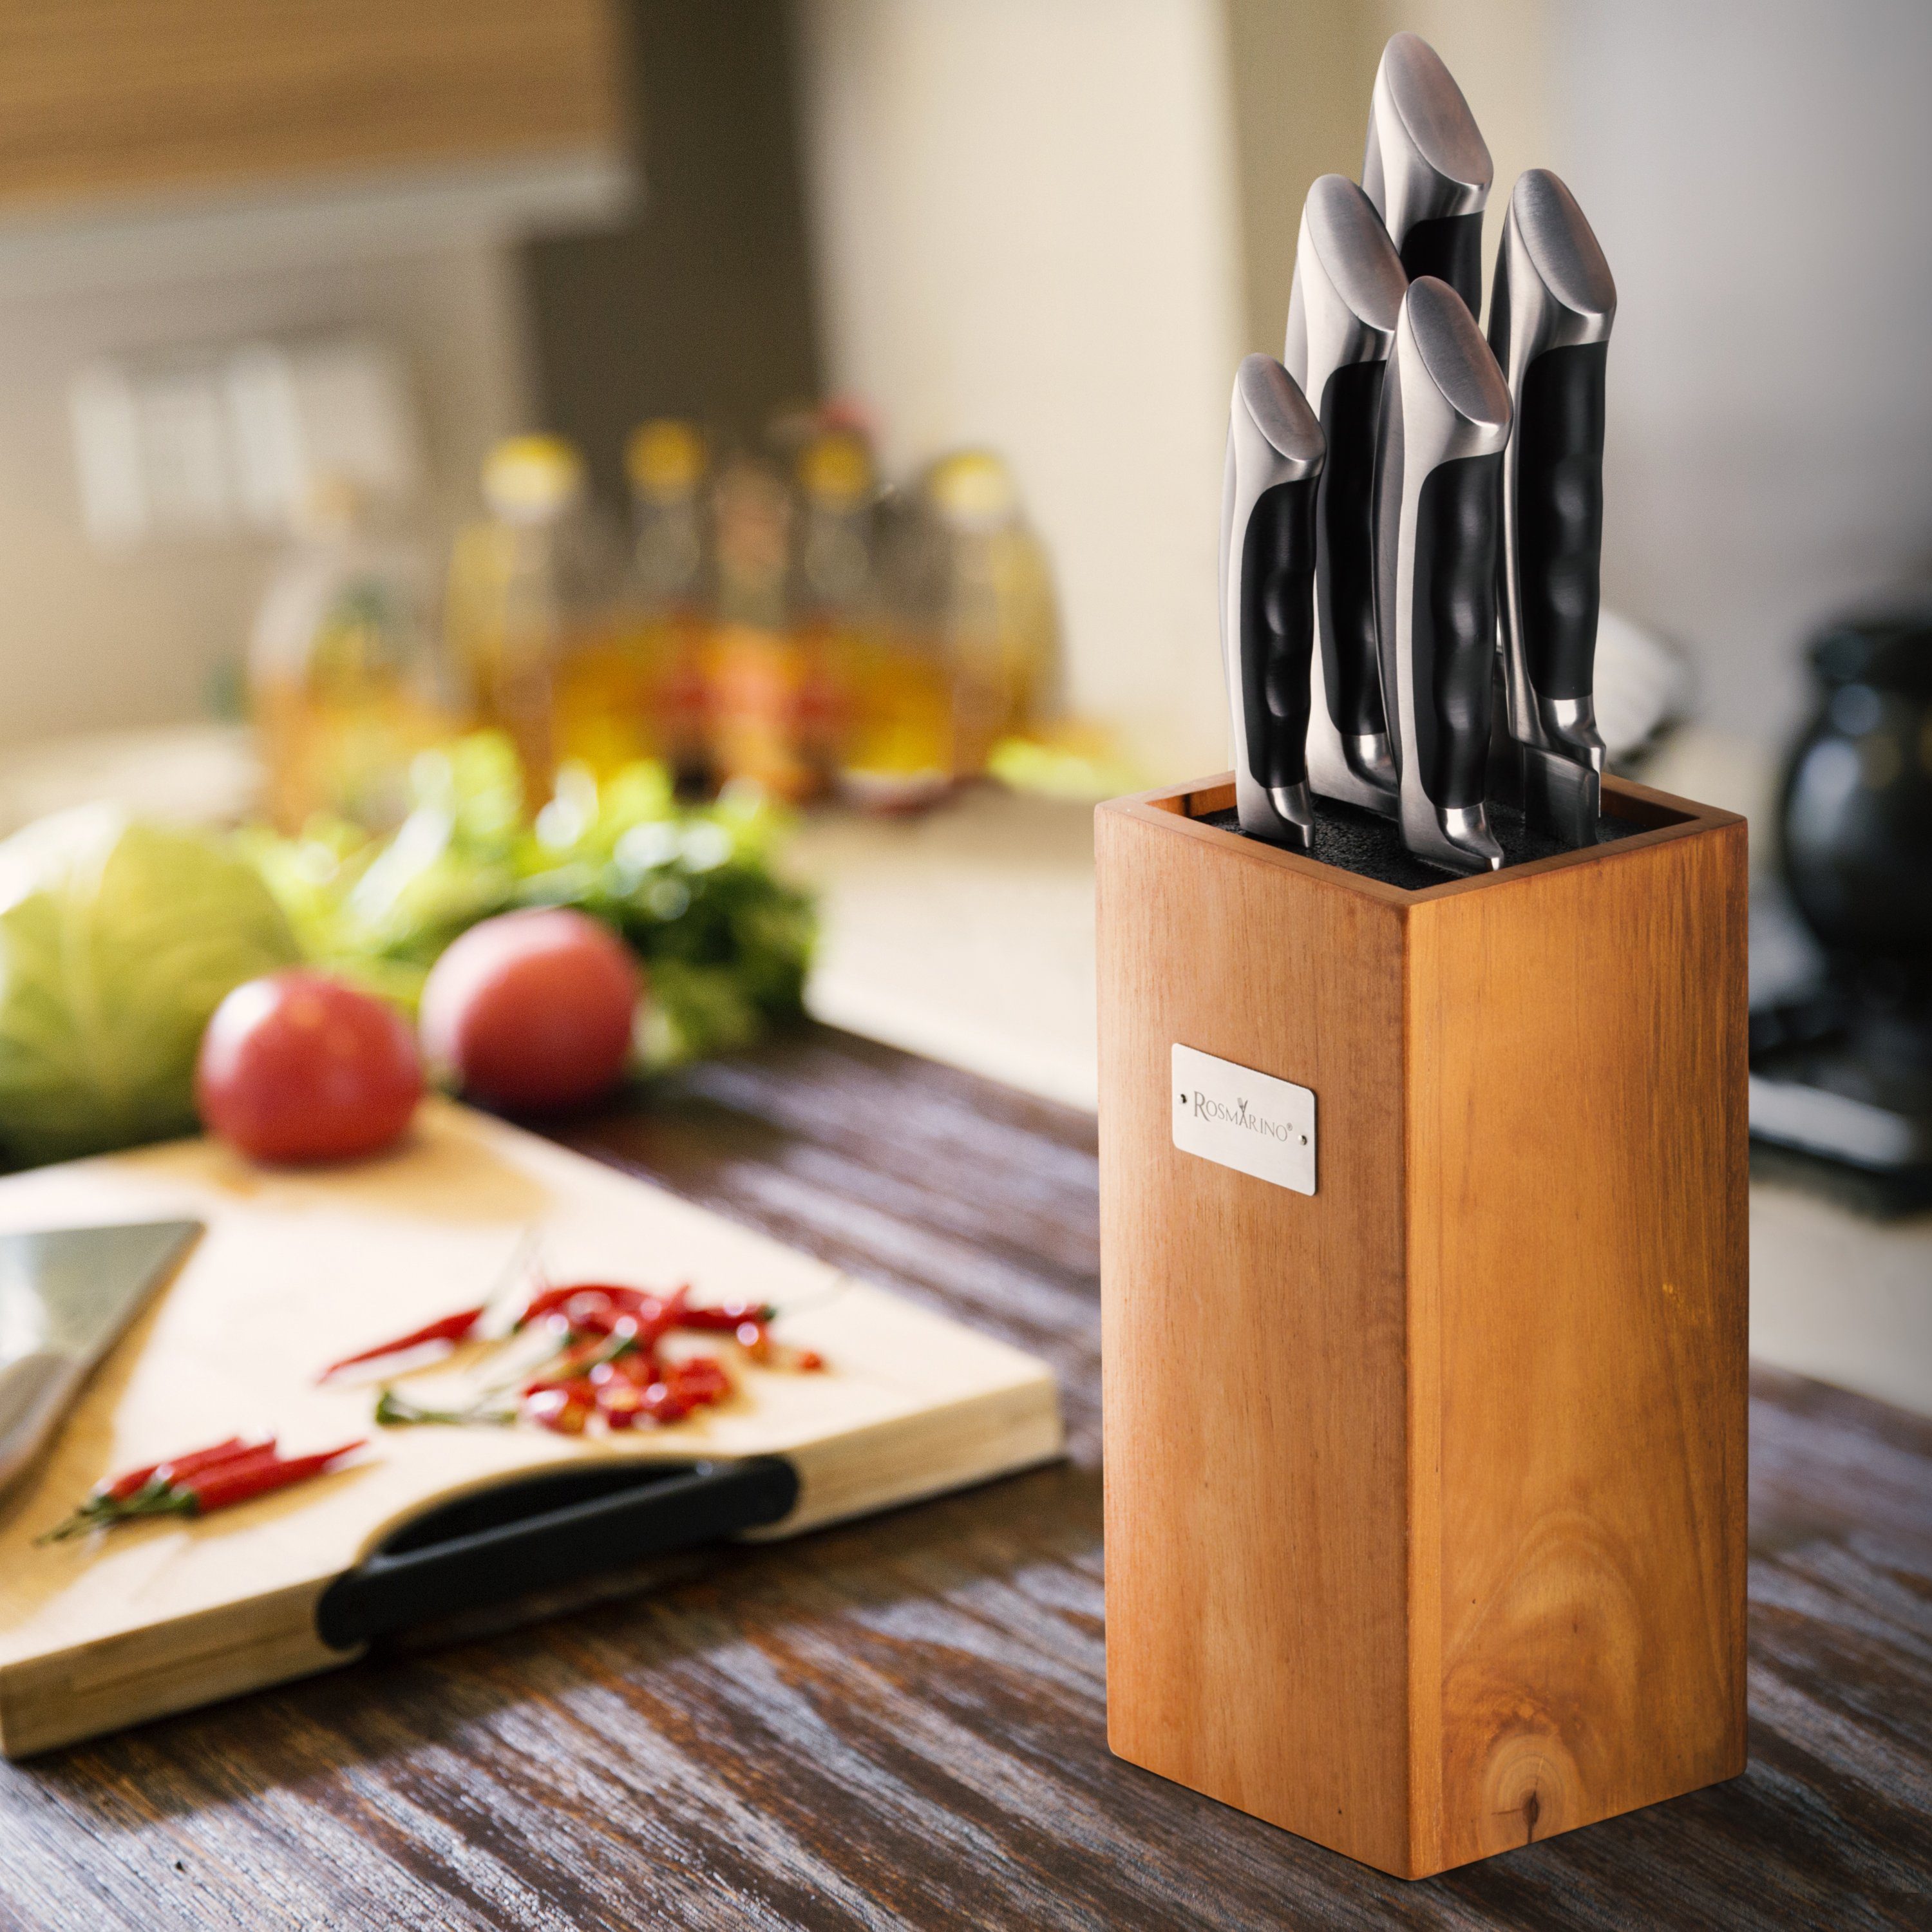 ROSMARINO Messerblock Messerblock aus und moderner - Holz Stabiler Messerhalter